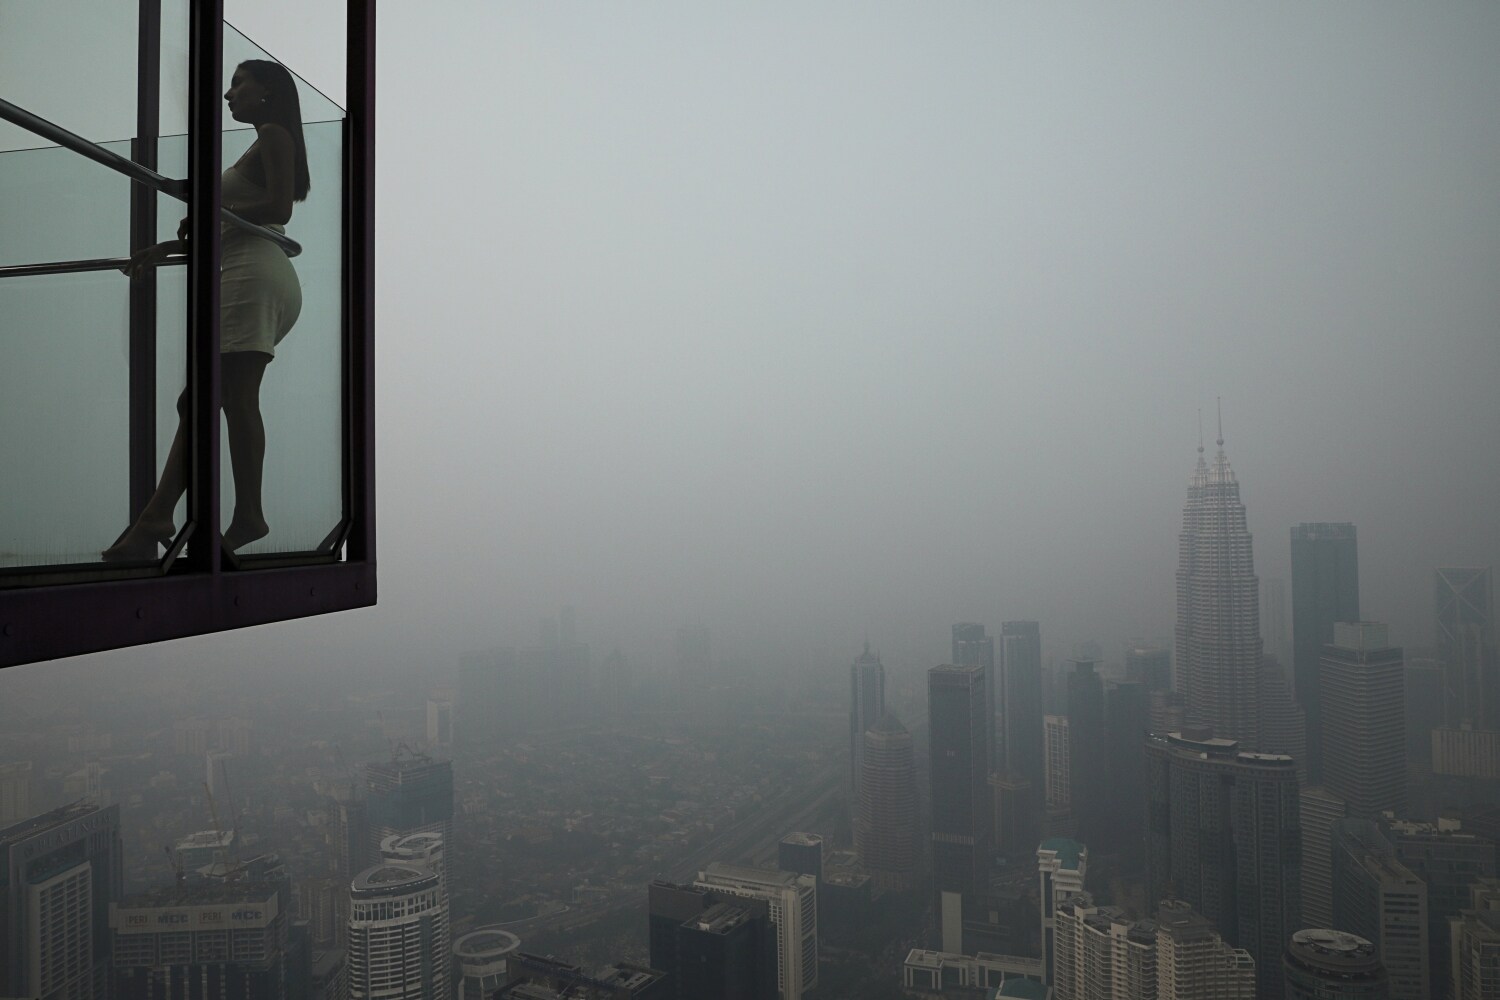 Una turista posa para una foto en la Torre de Kuala Lumpur con el horizonte de la ciudad al fondo envuelto en neblina, en Kuala Lumpur, Malasia